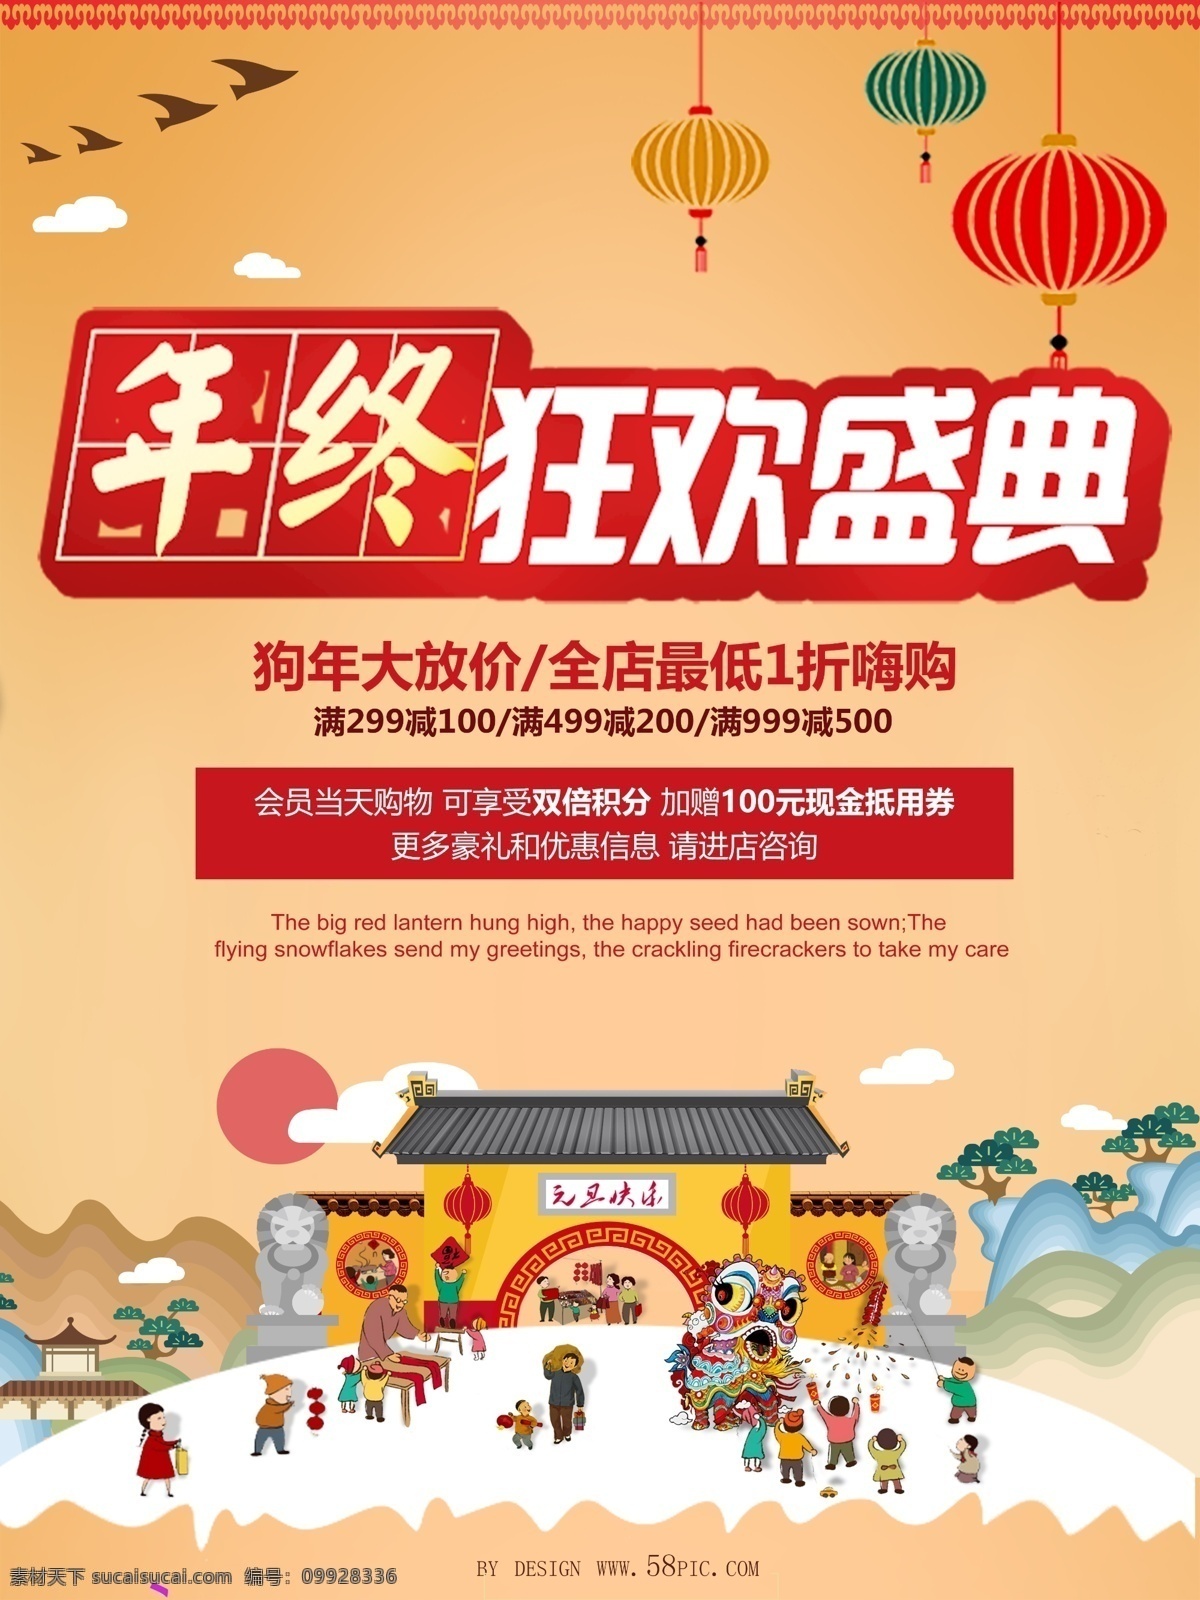 年终 狂欢 盛典 中国 风 特色 促销 促销海报设计 大放价 狗年 狂欢盛典 满 减 风格